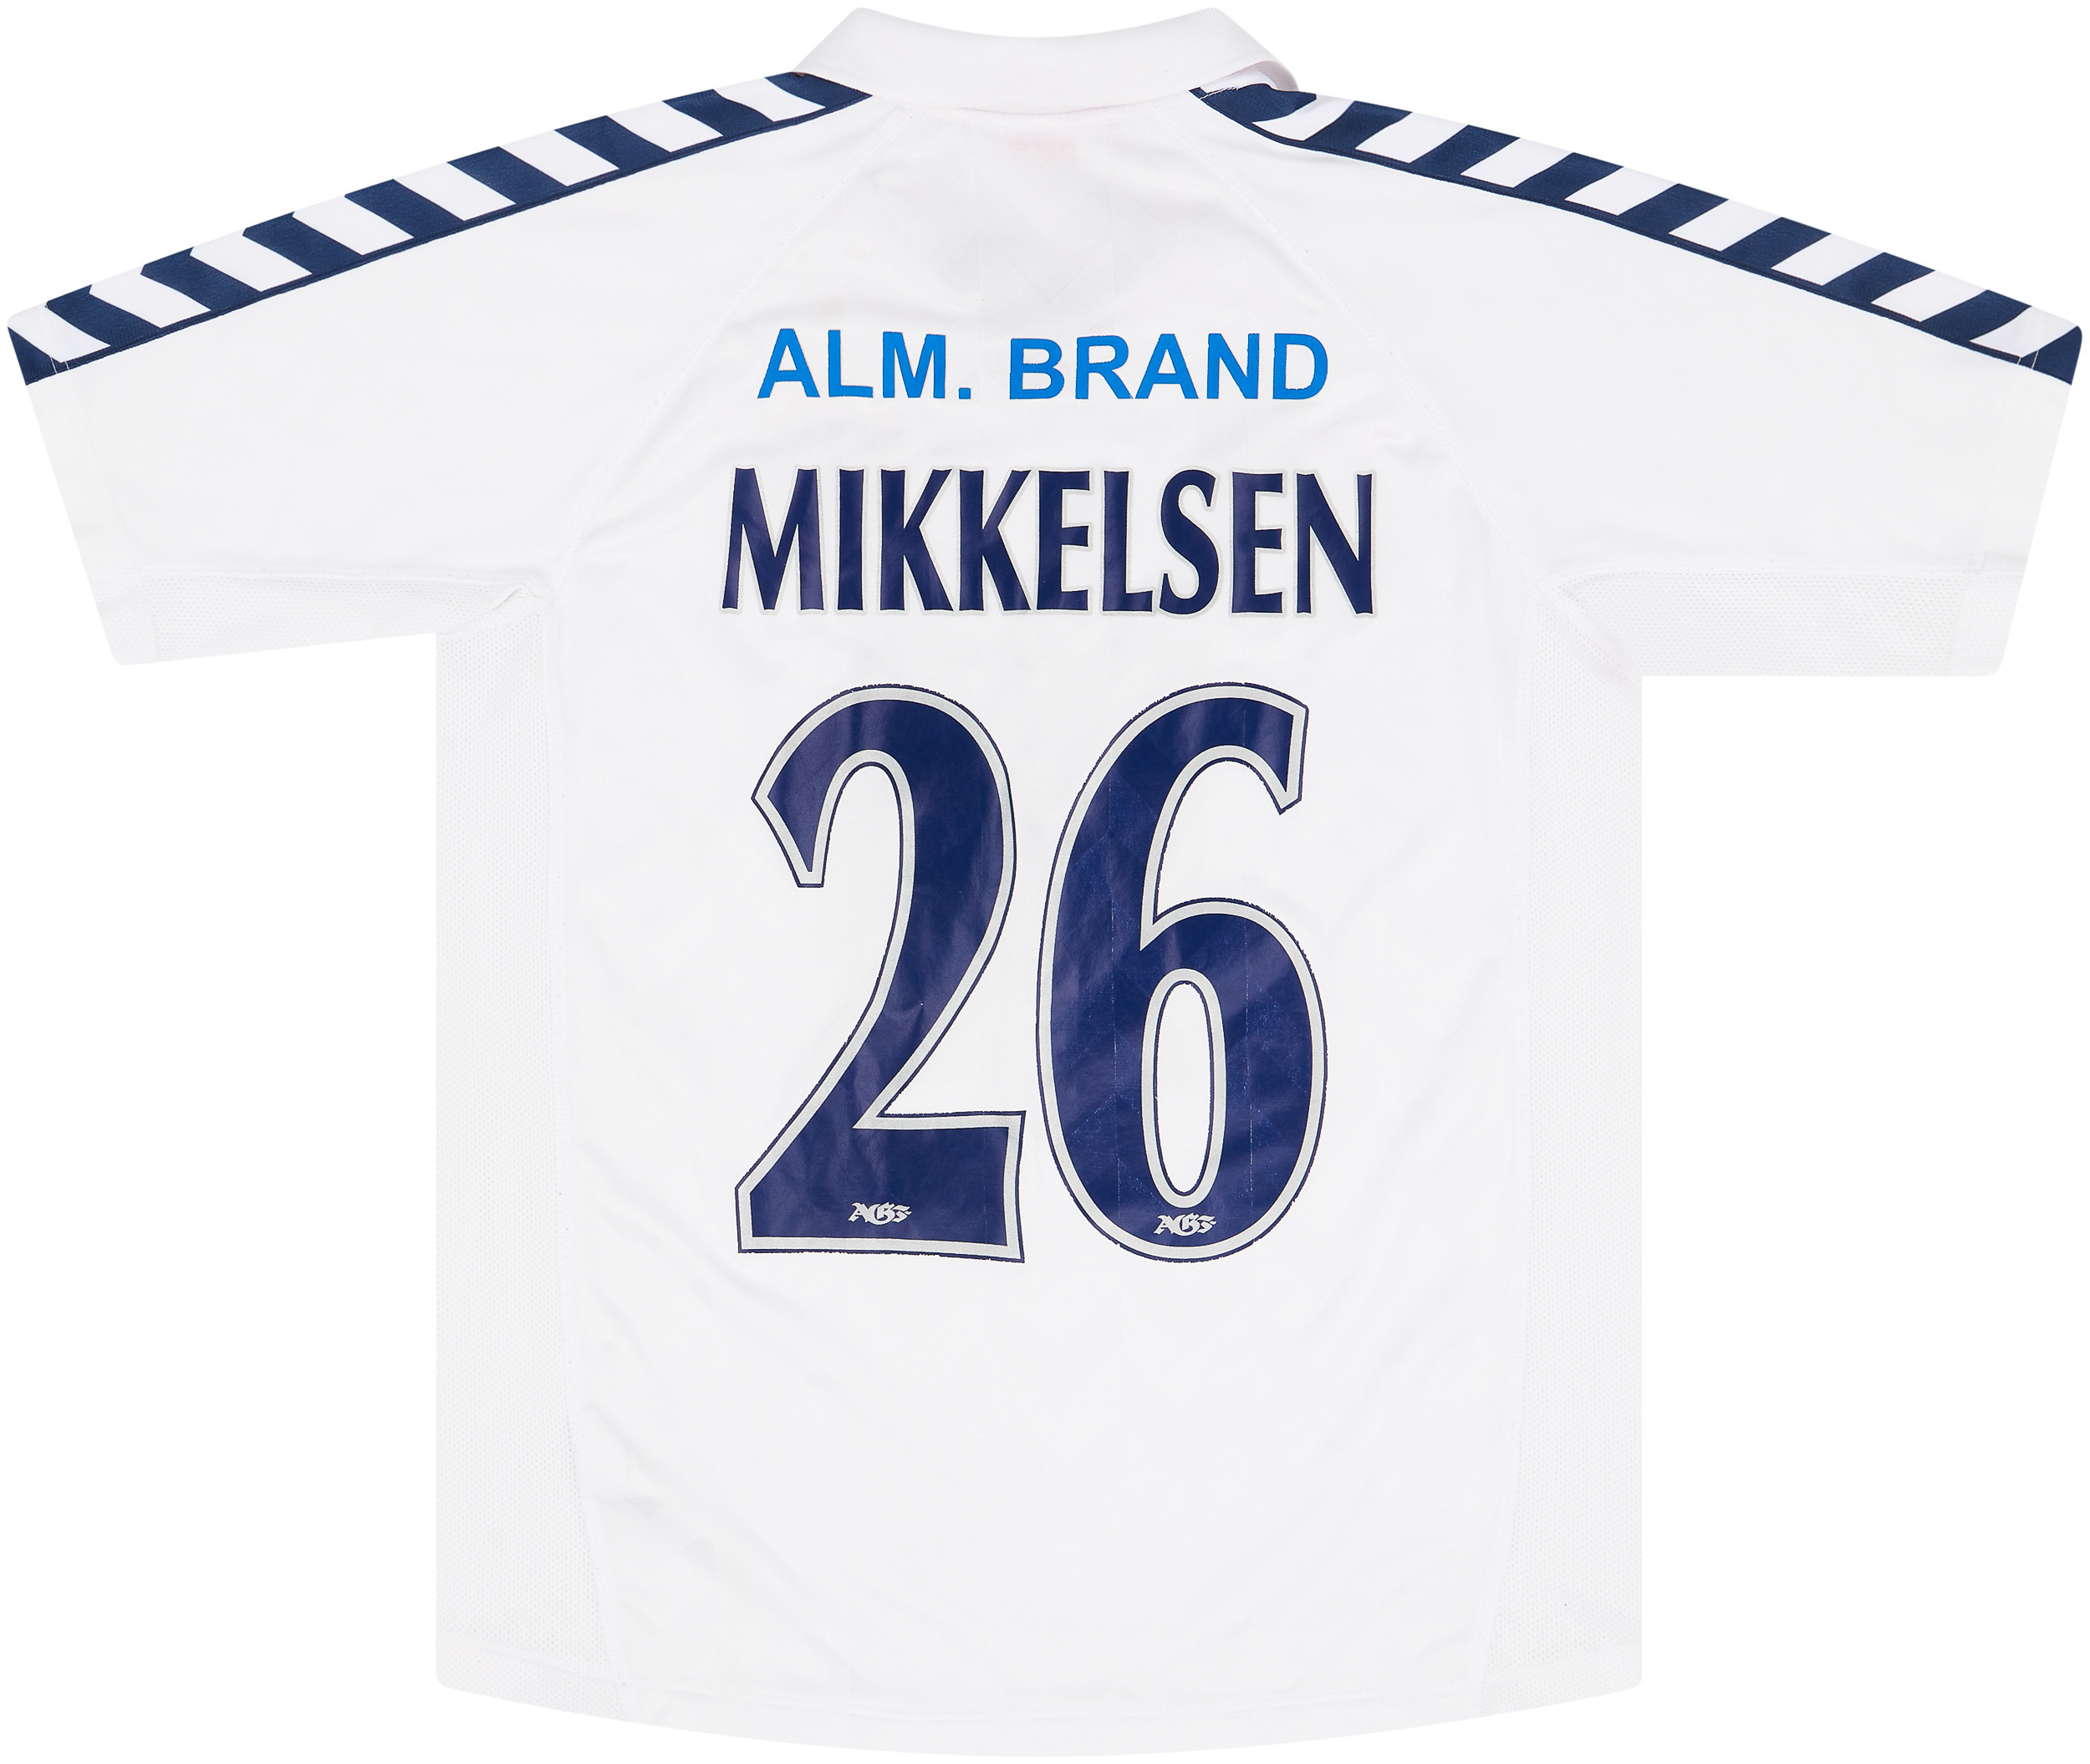 2005-07 AGF Aarhus Home Shirt Mikkelsen #26 - 7/10 - ()